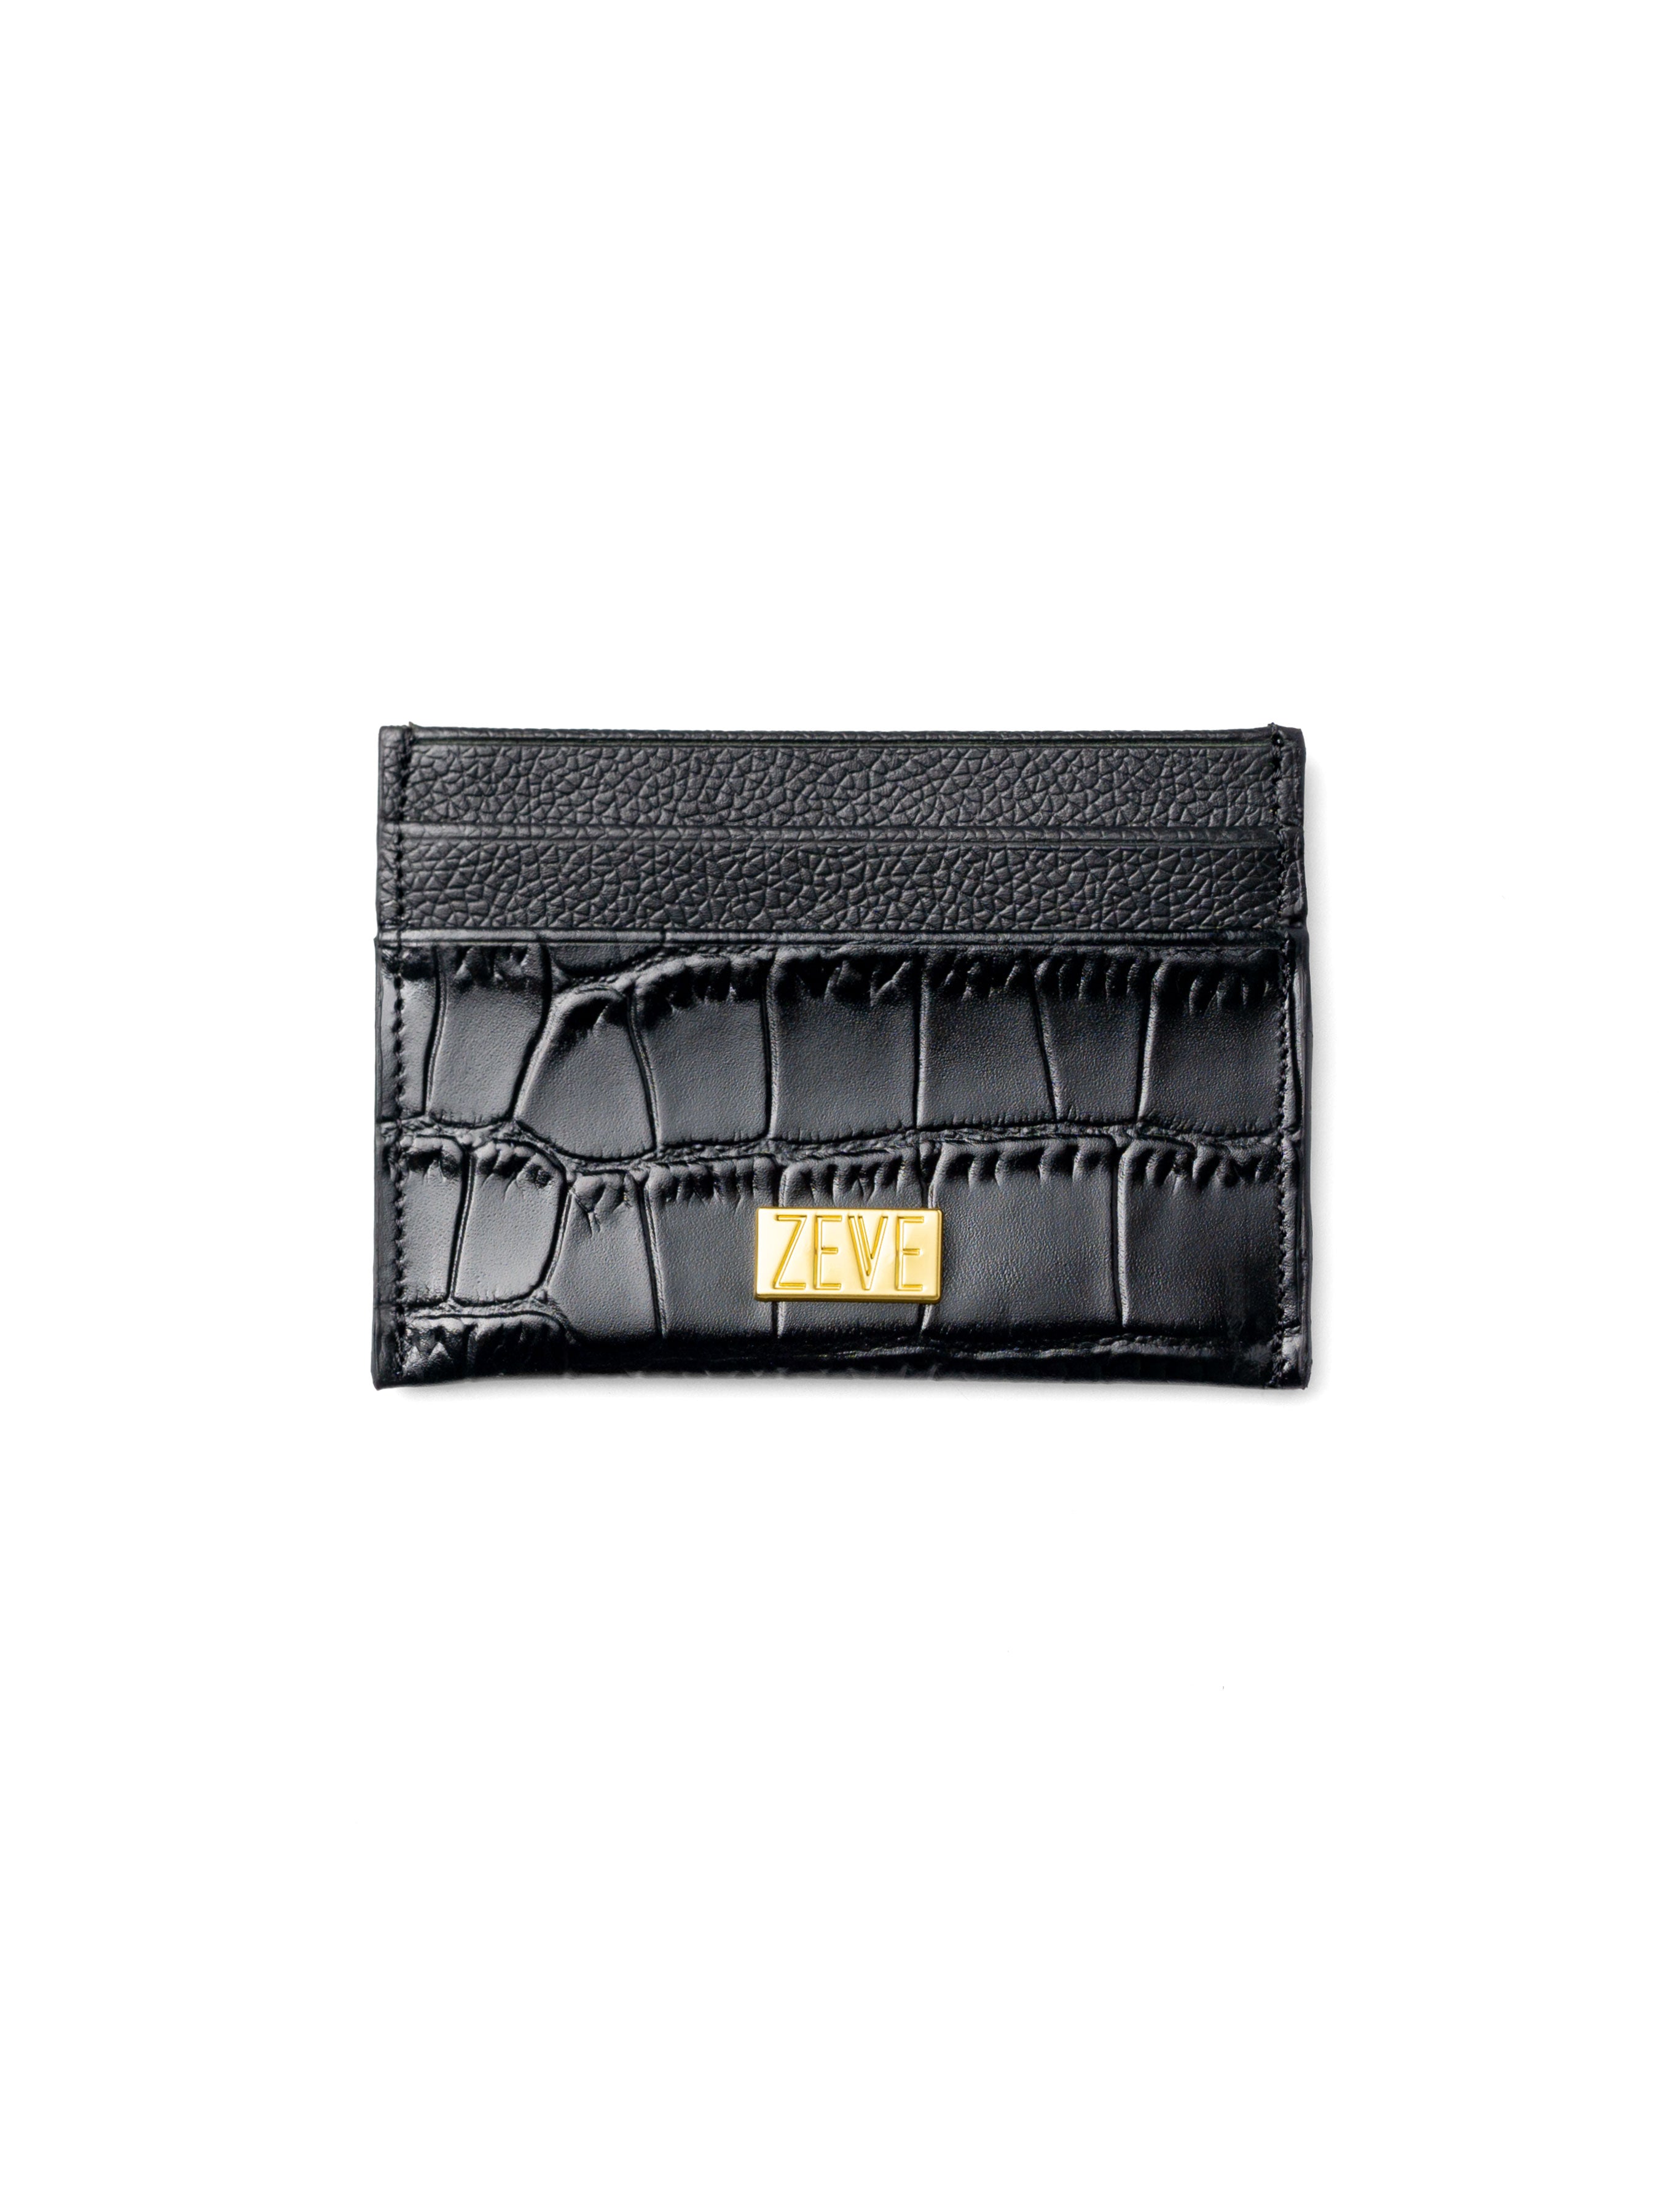 Card Holder - Black Matte Croco Leather - Zeve Shoes